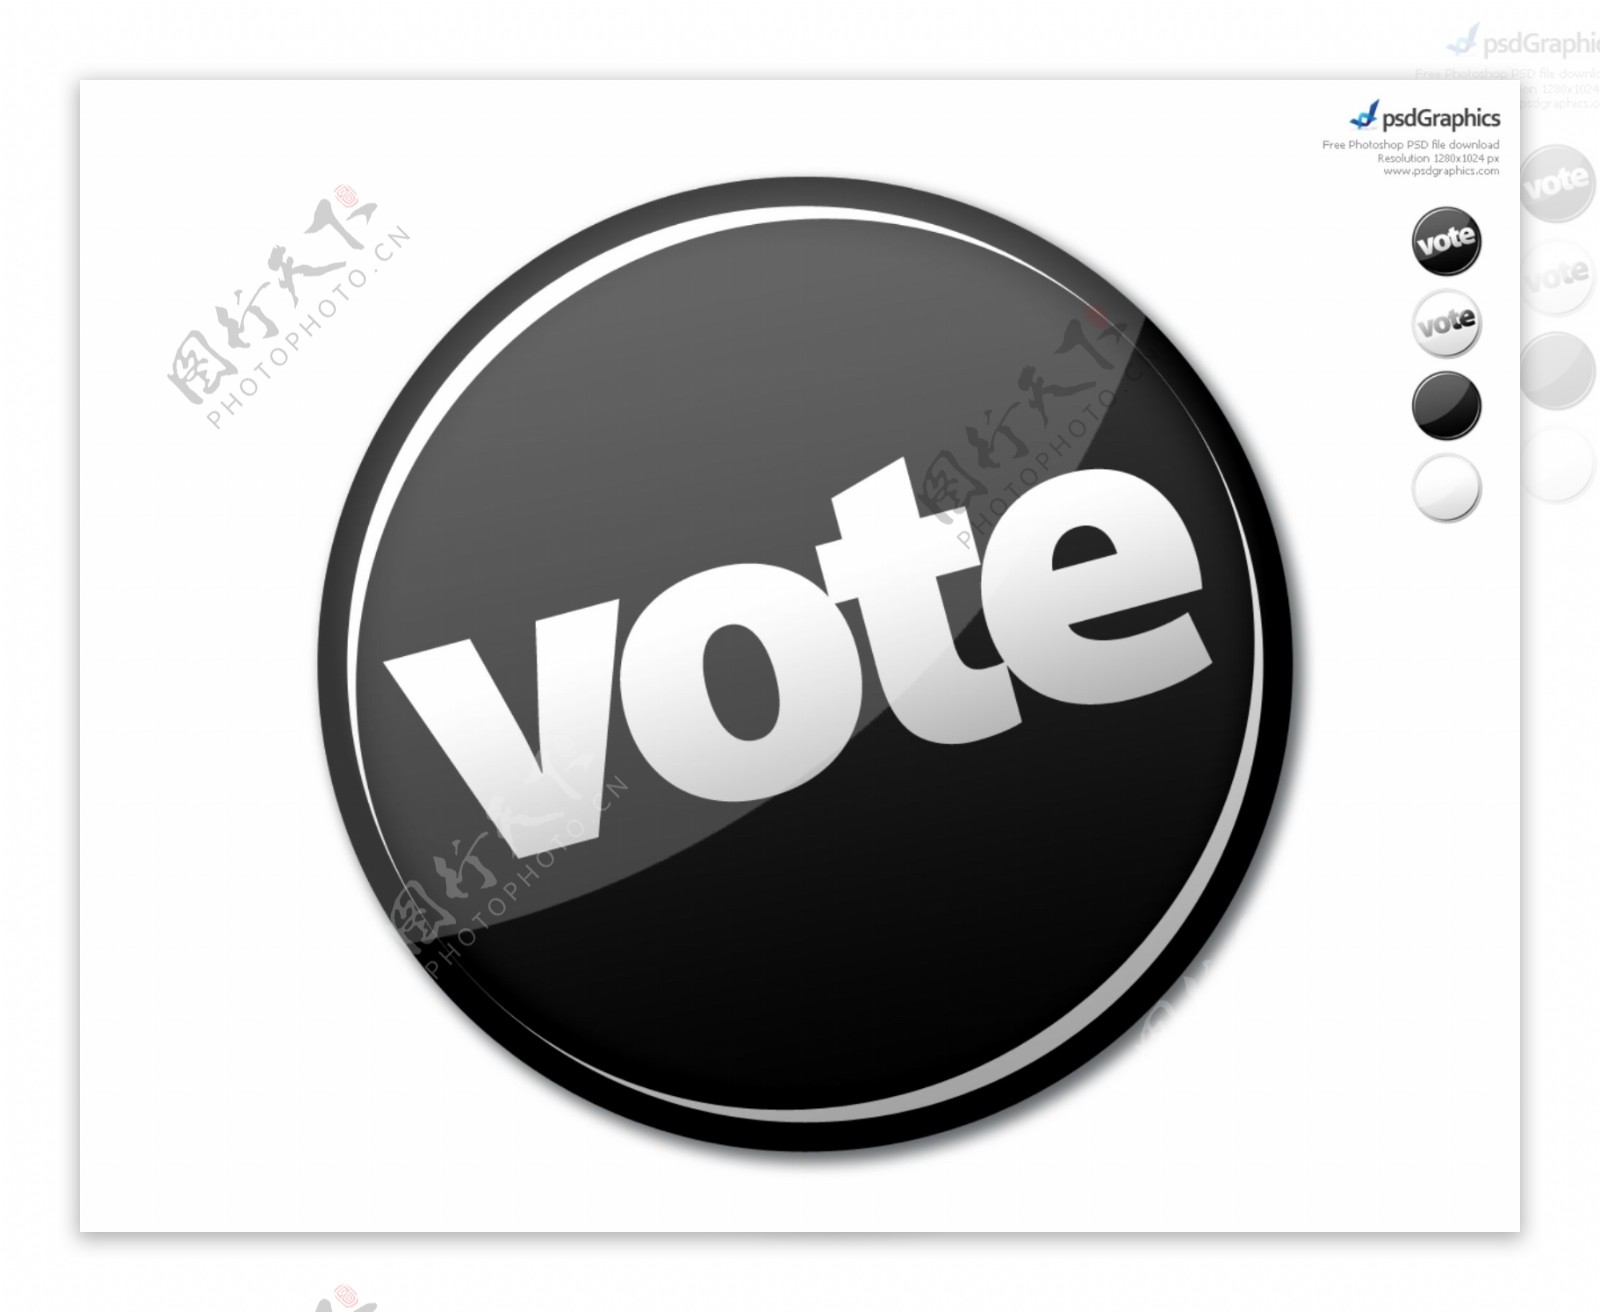 光滑的轮投票界面按钮PSD